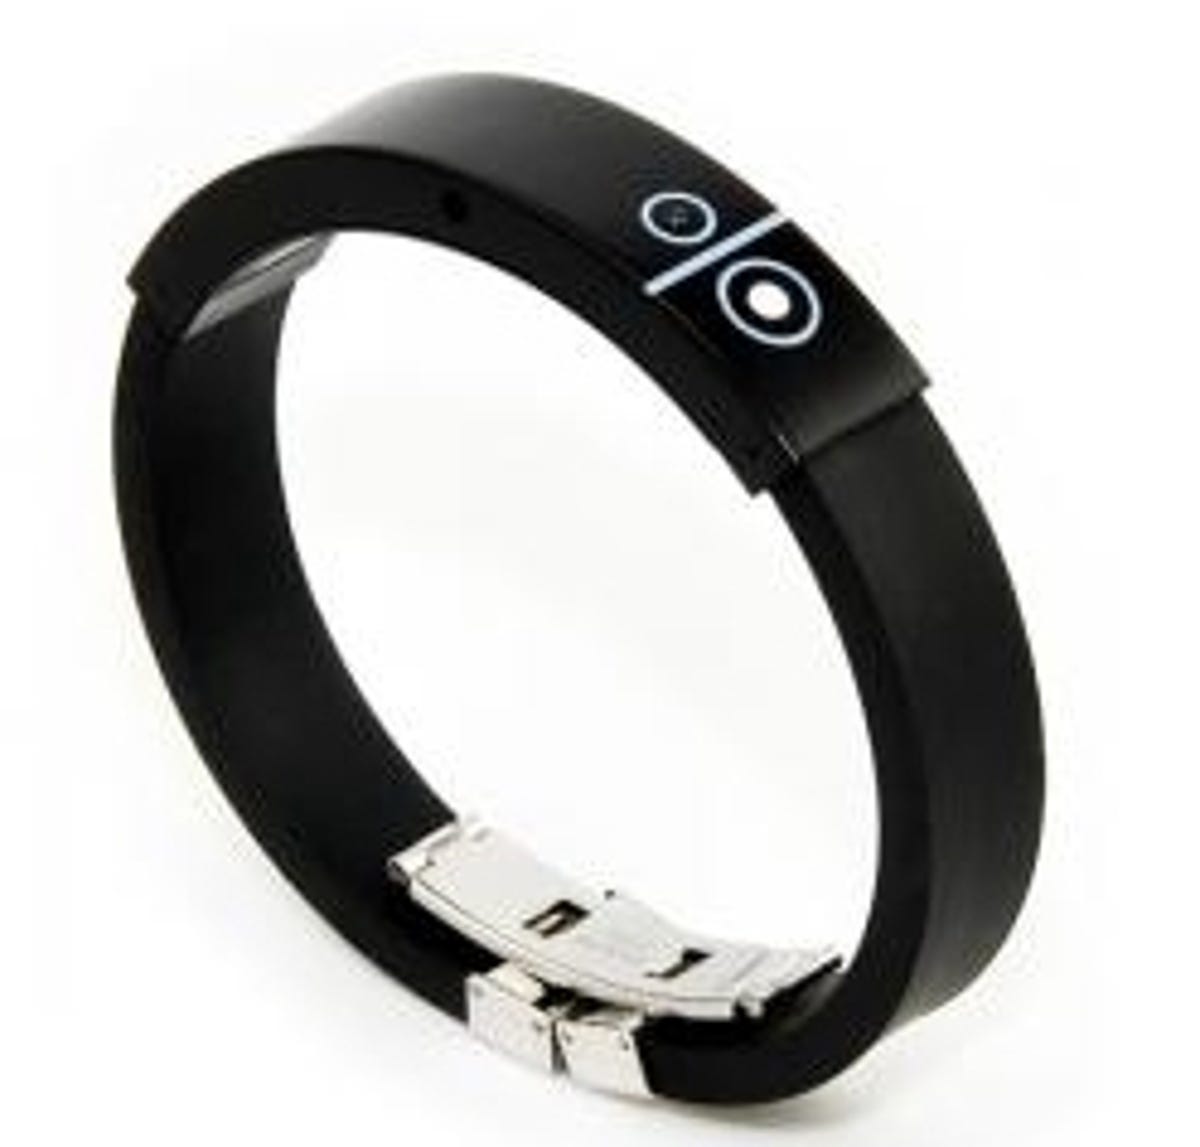 The LED Bluetooth Vibrating Bracelet